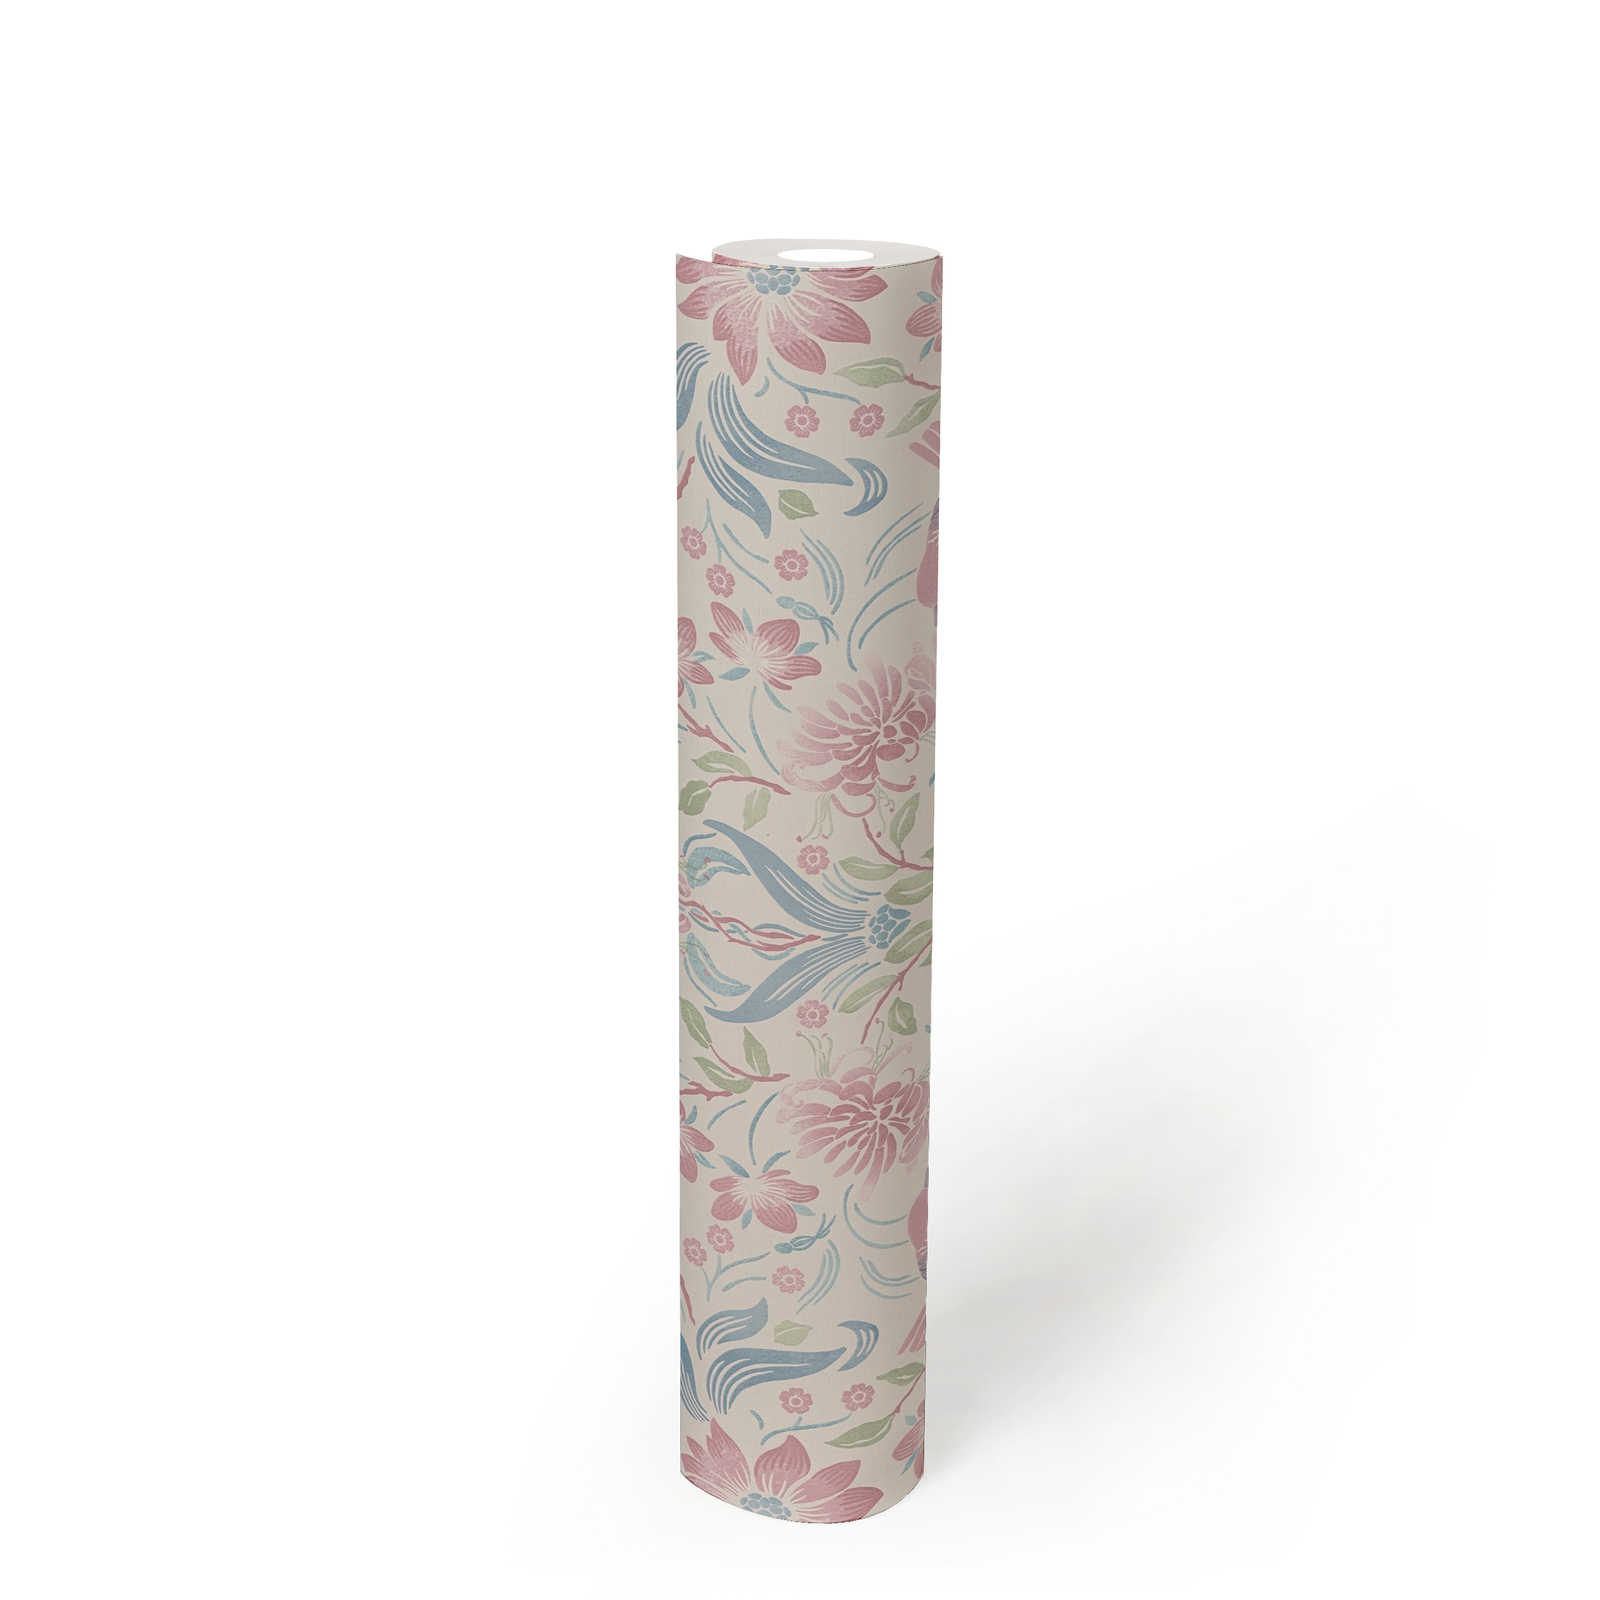             Bloemrijkpatroon behang met vogels - crème, blauw, roze
        